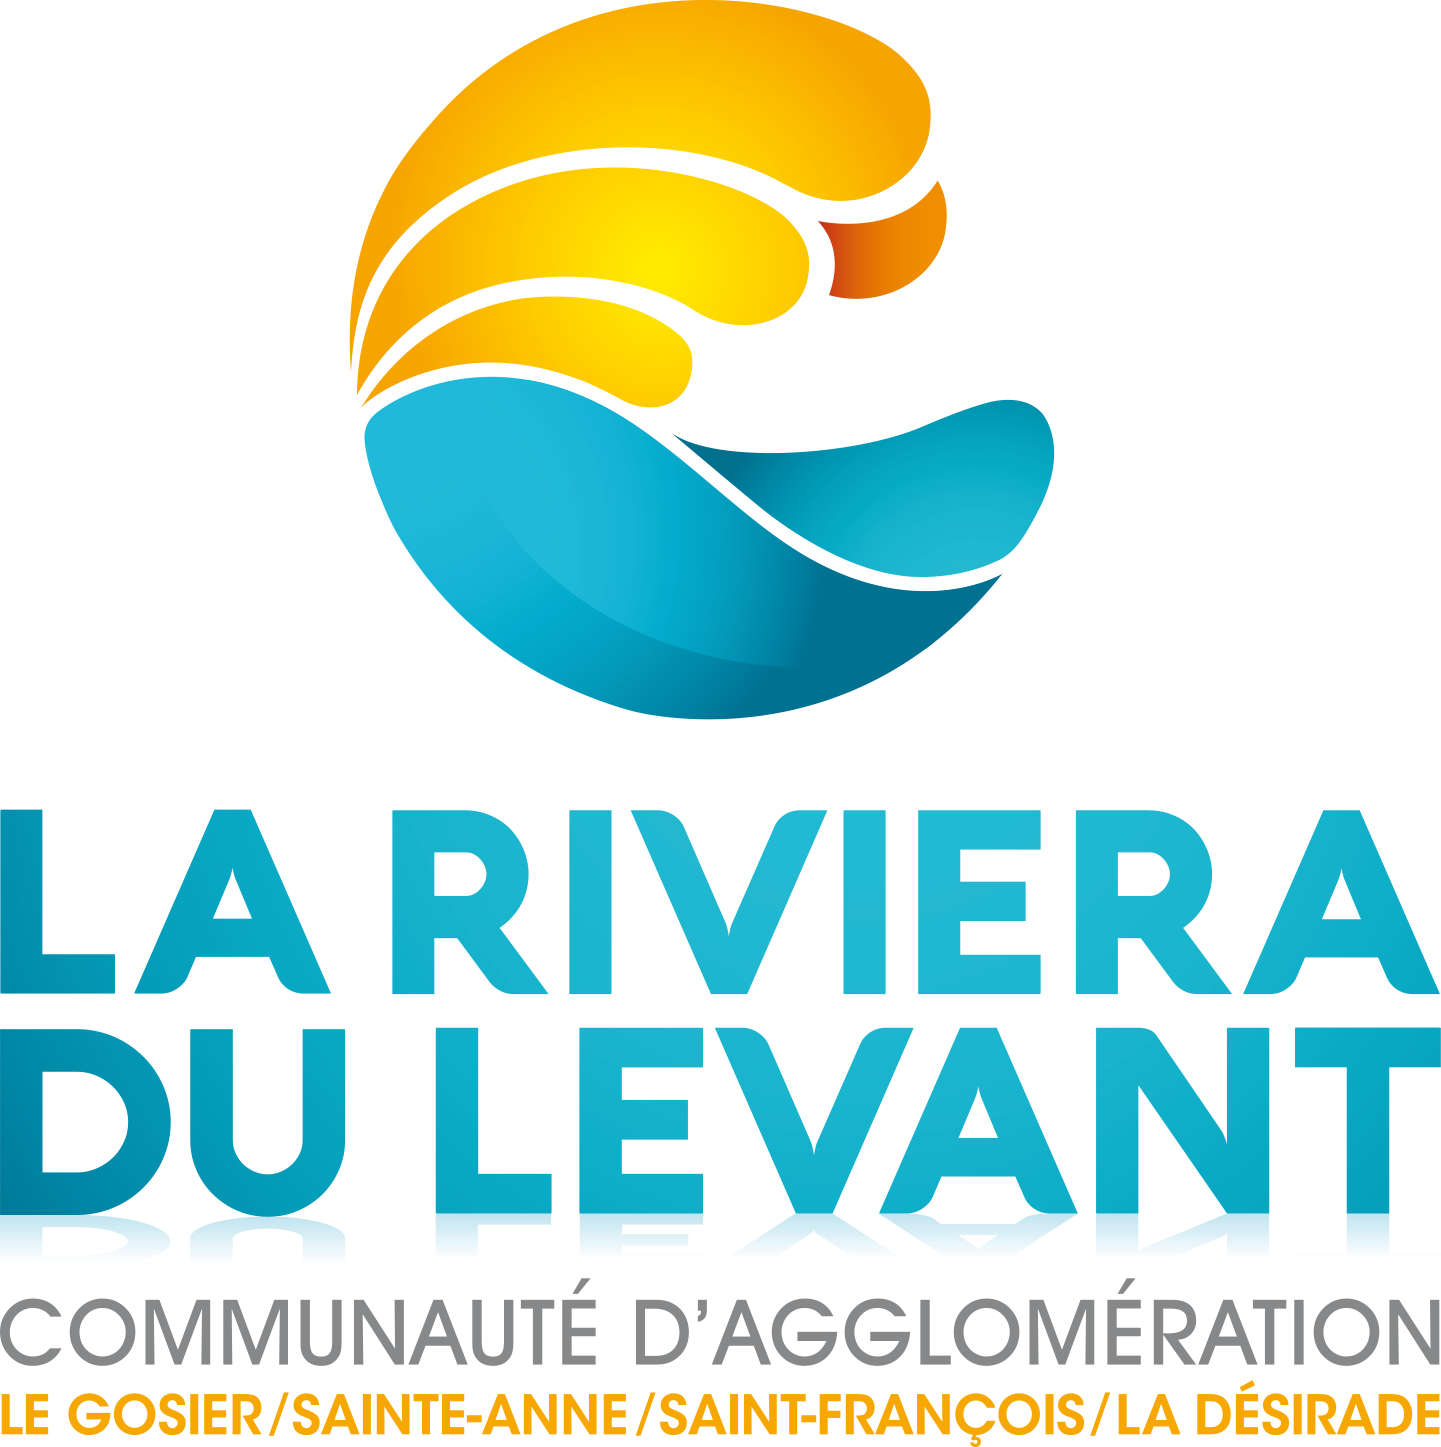 Communauté d'agglomération La riviera du Levant (CARL)